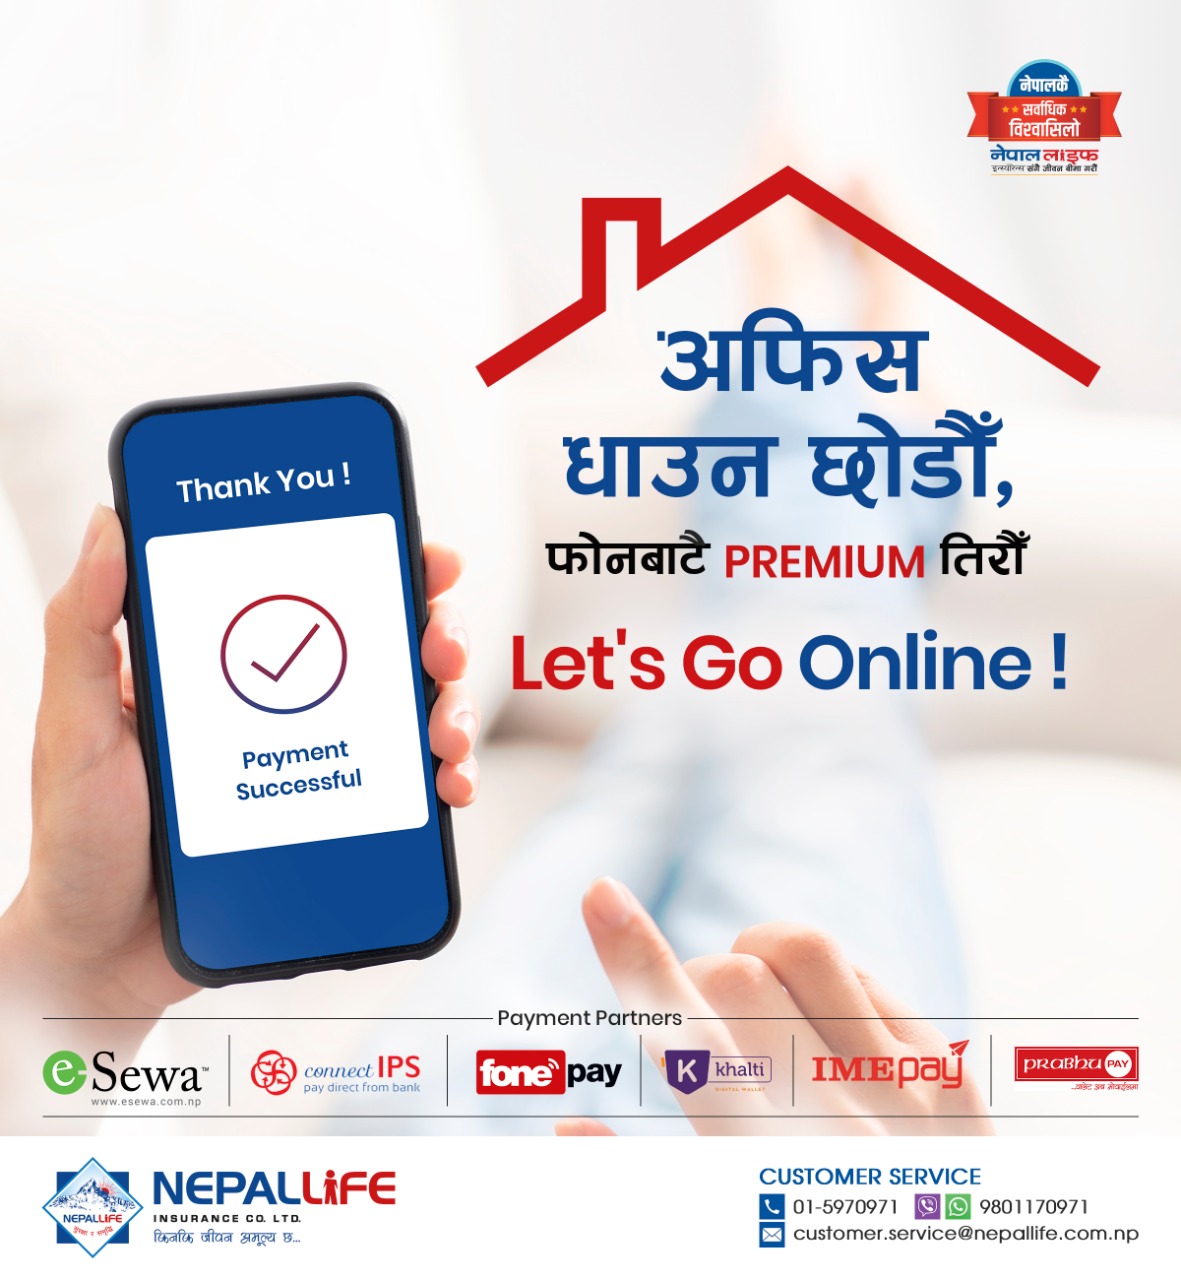 नेपाल लाइफको डिजिटल धमाका अभियान सार्वजनिक